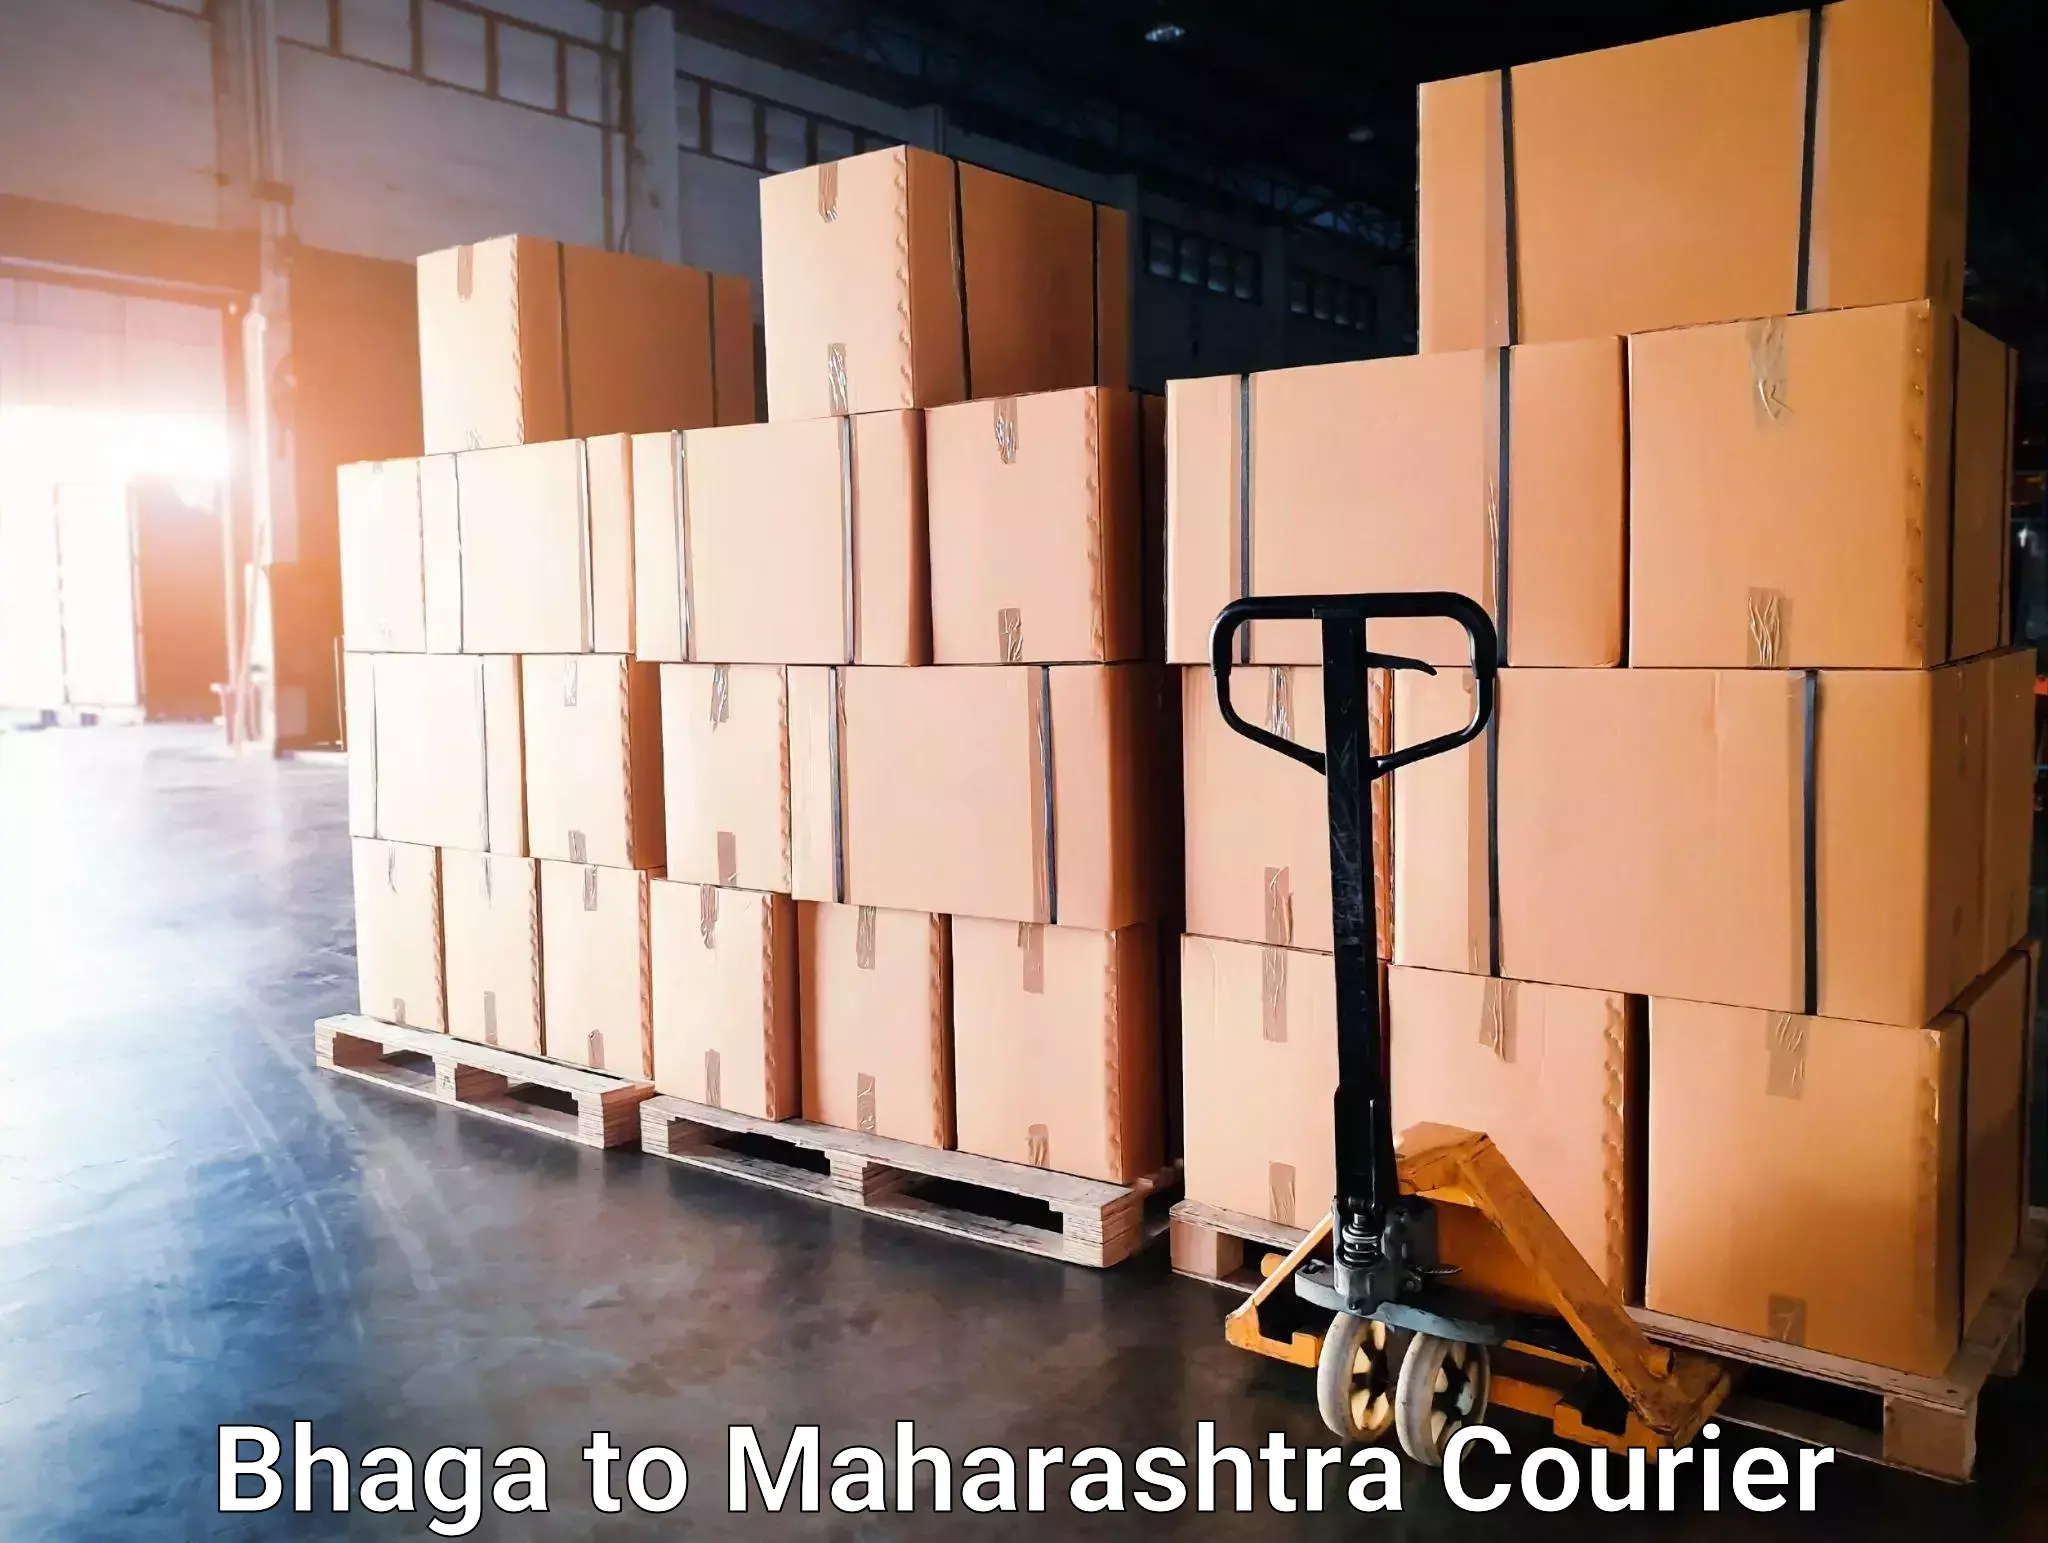 Express delivery capabilities Bhaga to Shivajinagar